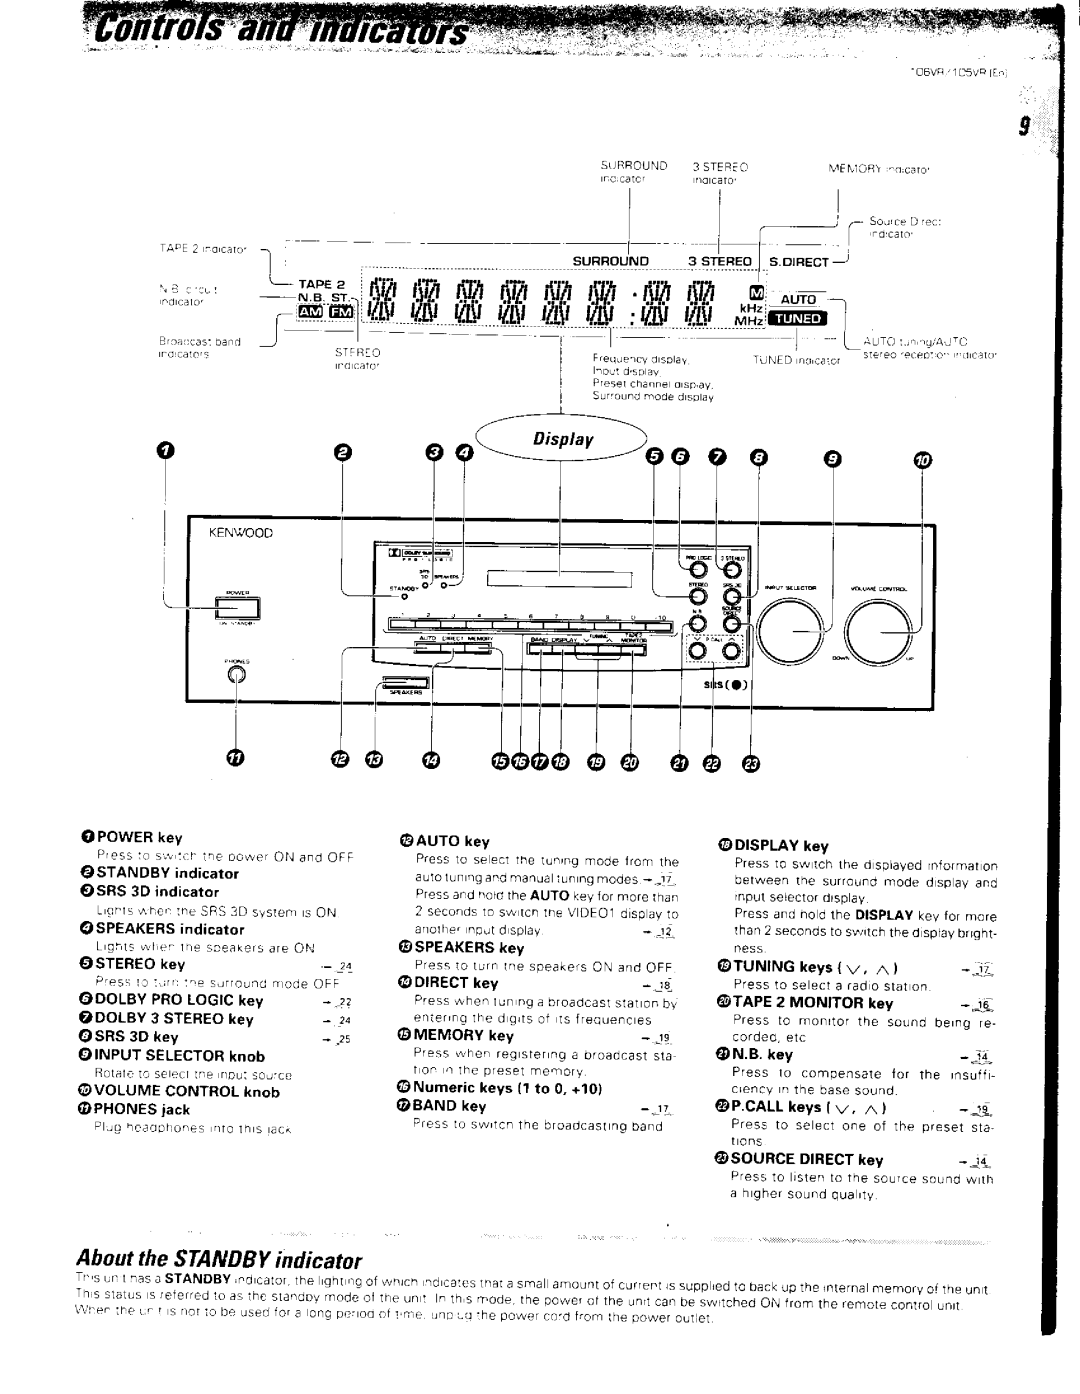 Kenwood 106VR, 105VR manual 